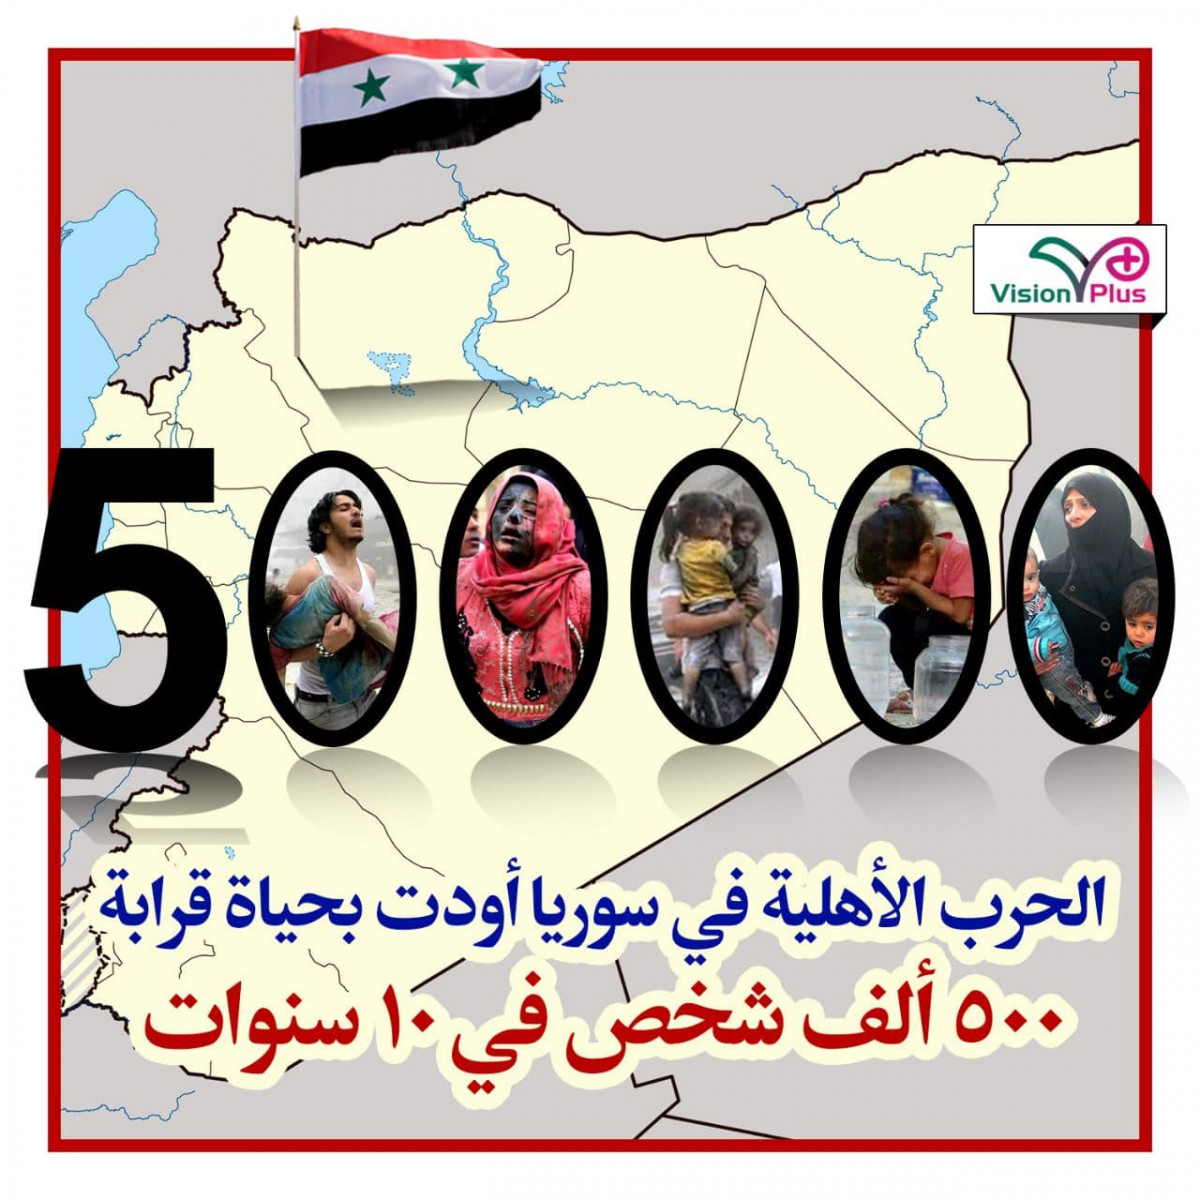 نتيجة الحرب الأهلية في سوريا